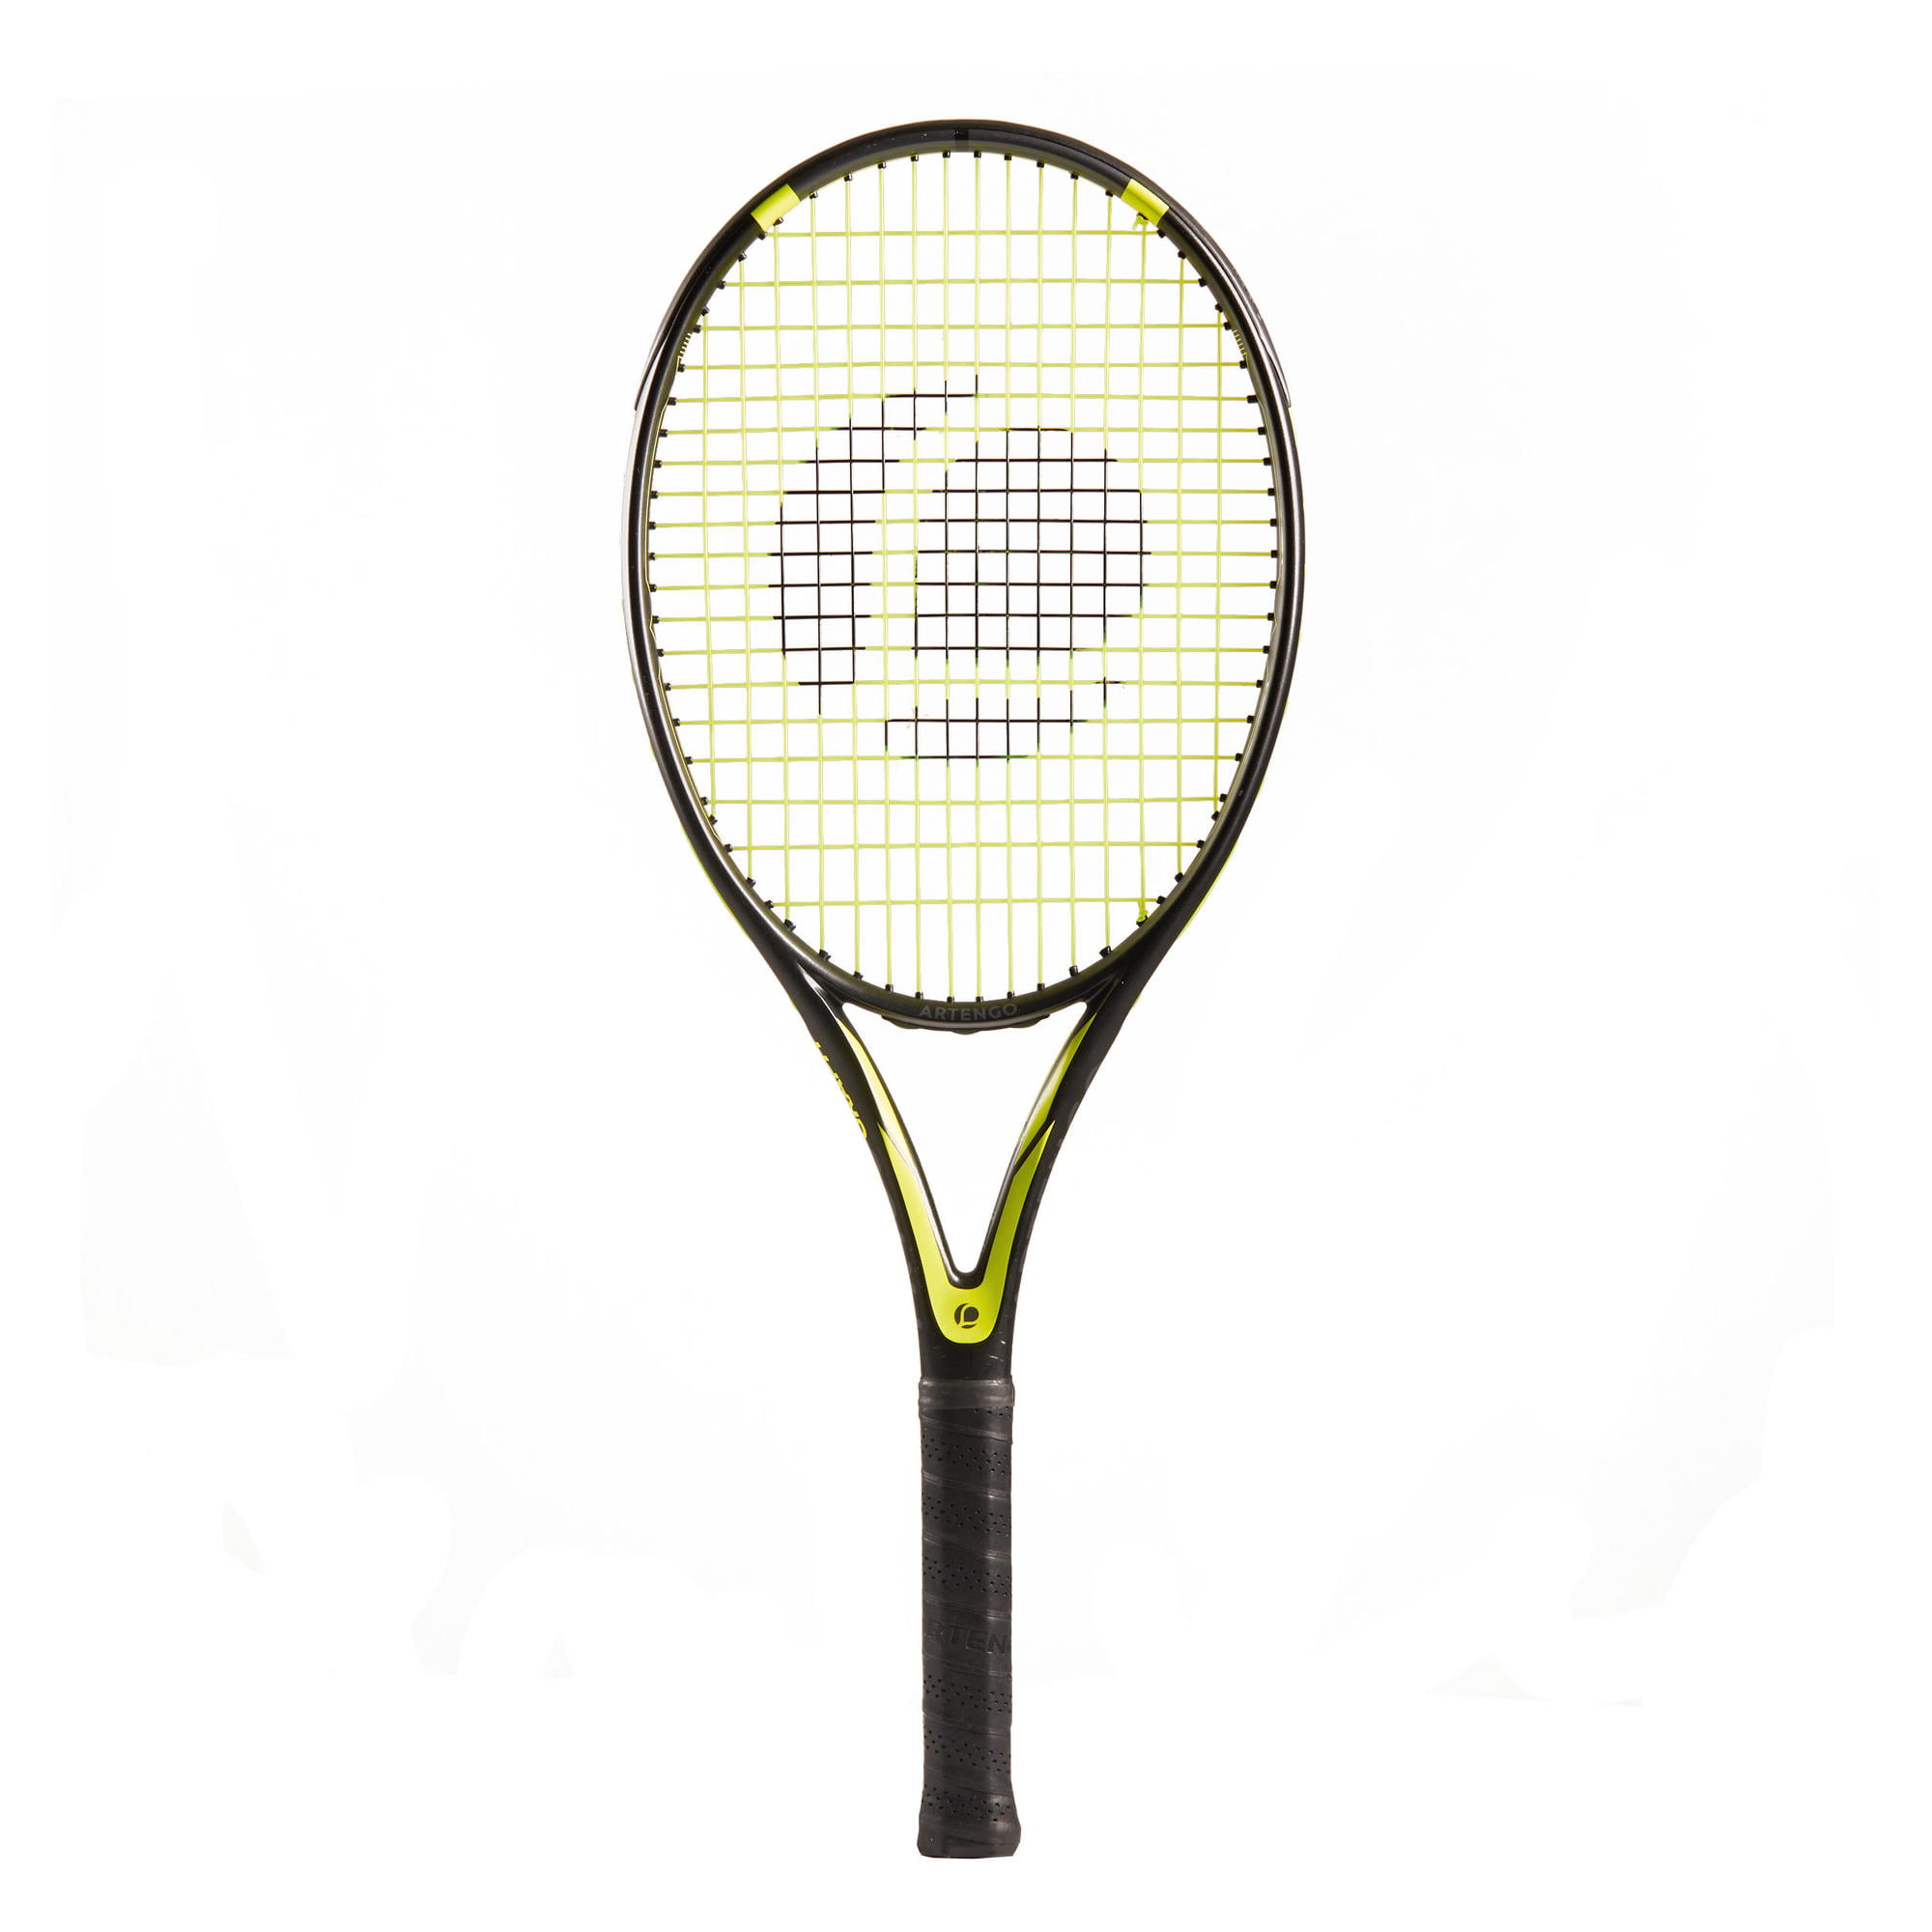 decathlon tennis racquet